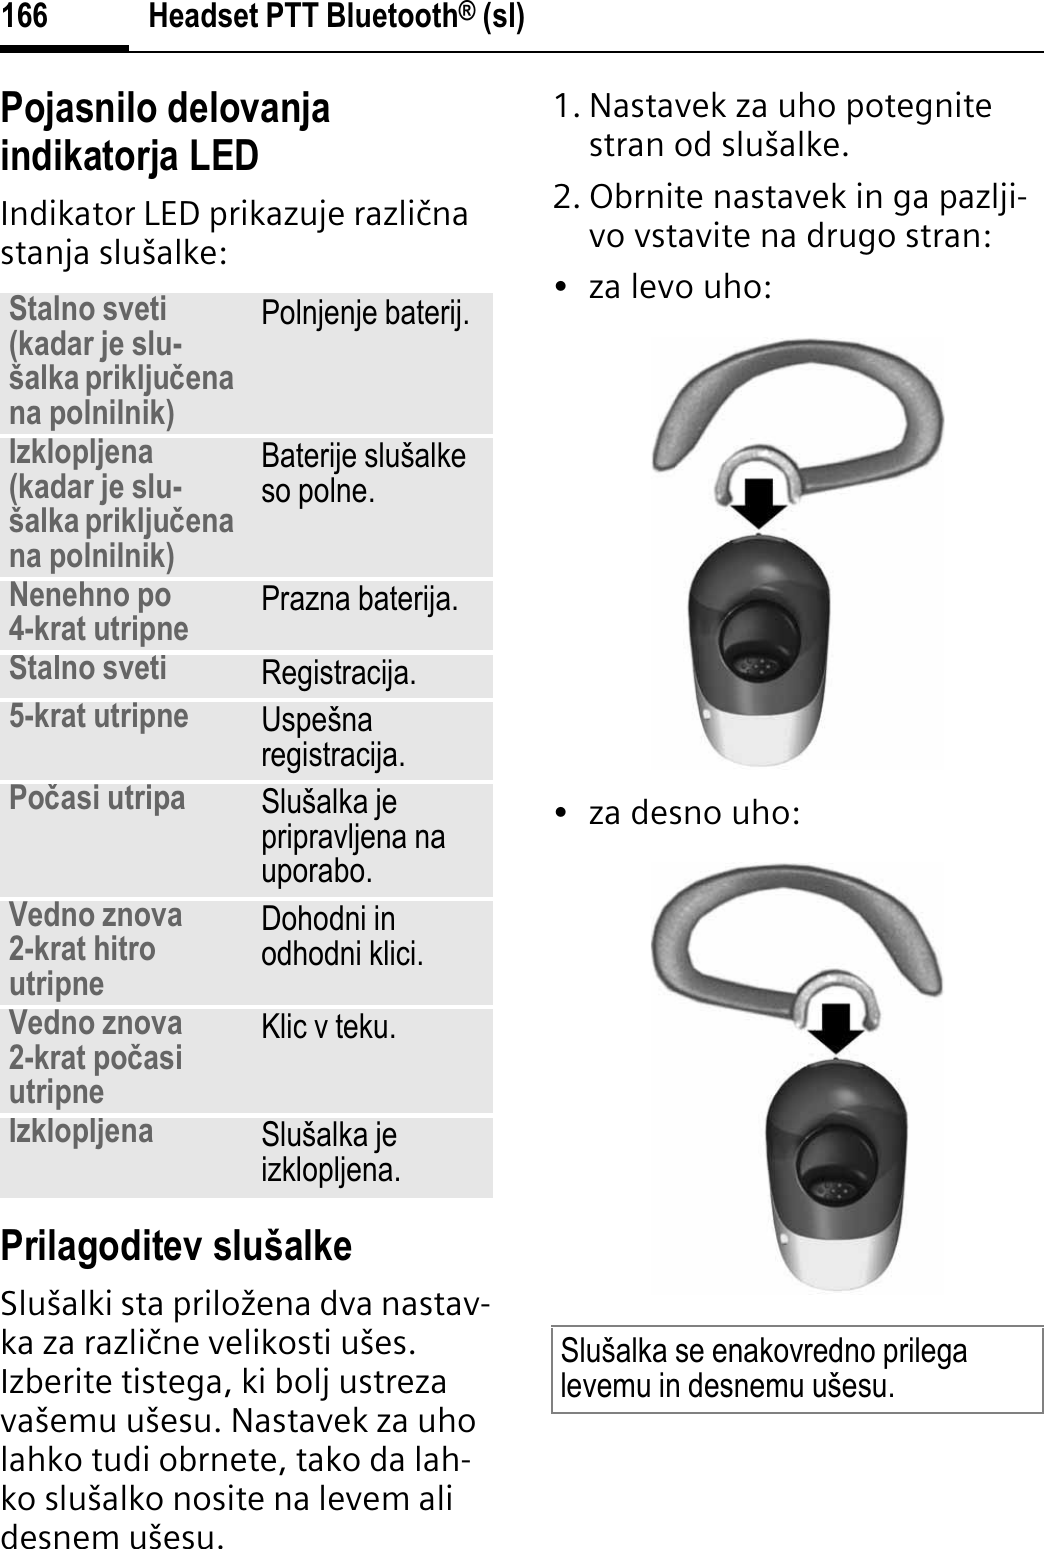 Headset PTT Bluetooth® (sl)166Pojasnilo delovanja indikatorja LEDIndikator LED prikazuje razliþna stanja slušalke:Prilagoditev slušalkeSlušalki sta priložena dva nastav-ka za razliþne velikosti ušes. Izberite tistega, ki bolj ustreza vašemu ušesu. Nastavek za uho lahko tudi obrnete, tako da lah-ko slušalko nosite na levem ali desnem ušesu. 1. Nastavek za uho potegnite stran od slušalke.2. Obrnite nastavek in ga pazlji-vo vstavite na drugo stran:• za levo uho:•za desno uho:Stalno sveti (kadar je slu-šalka prikljuÿenana polnilnik)Polnjenje baterij.Izklopljena (kadar je slu-šalka prikljuÿenana polnilnik)Baterije slušalke so polne.Nenehno po 4-krat utripne Prazna baterija.Stalno sveti Registracija.5-krat utripne Uspešna registracija.Poÿasi utripa Slušalka je pripravljena na uporabo.Vedno znova 2-krat hitro utripneDohodni in odhodni klici.Vedno znova 2-krat poÿasi utripneKlic v teku.Izklopljena Slušalka je izklopljena.Slušalka se enakovredno prilega levemu in desnemu ušesu.